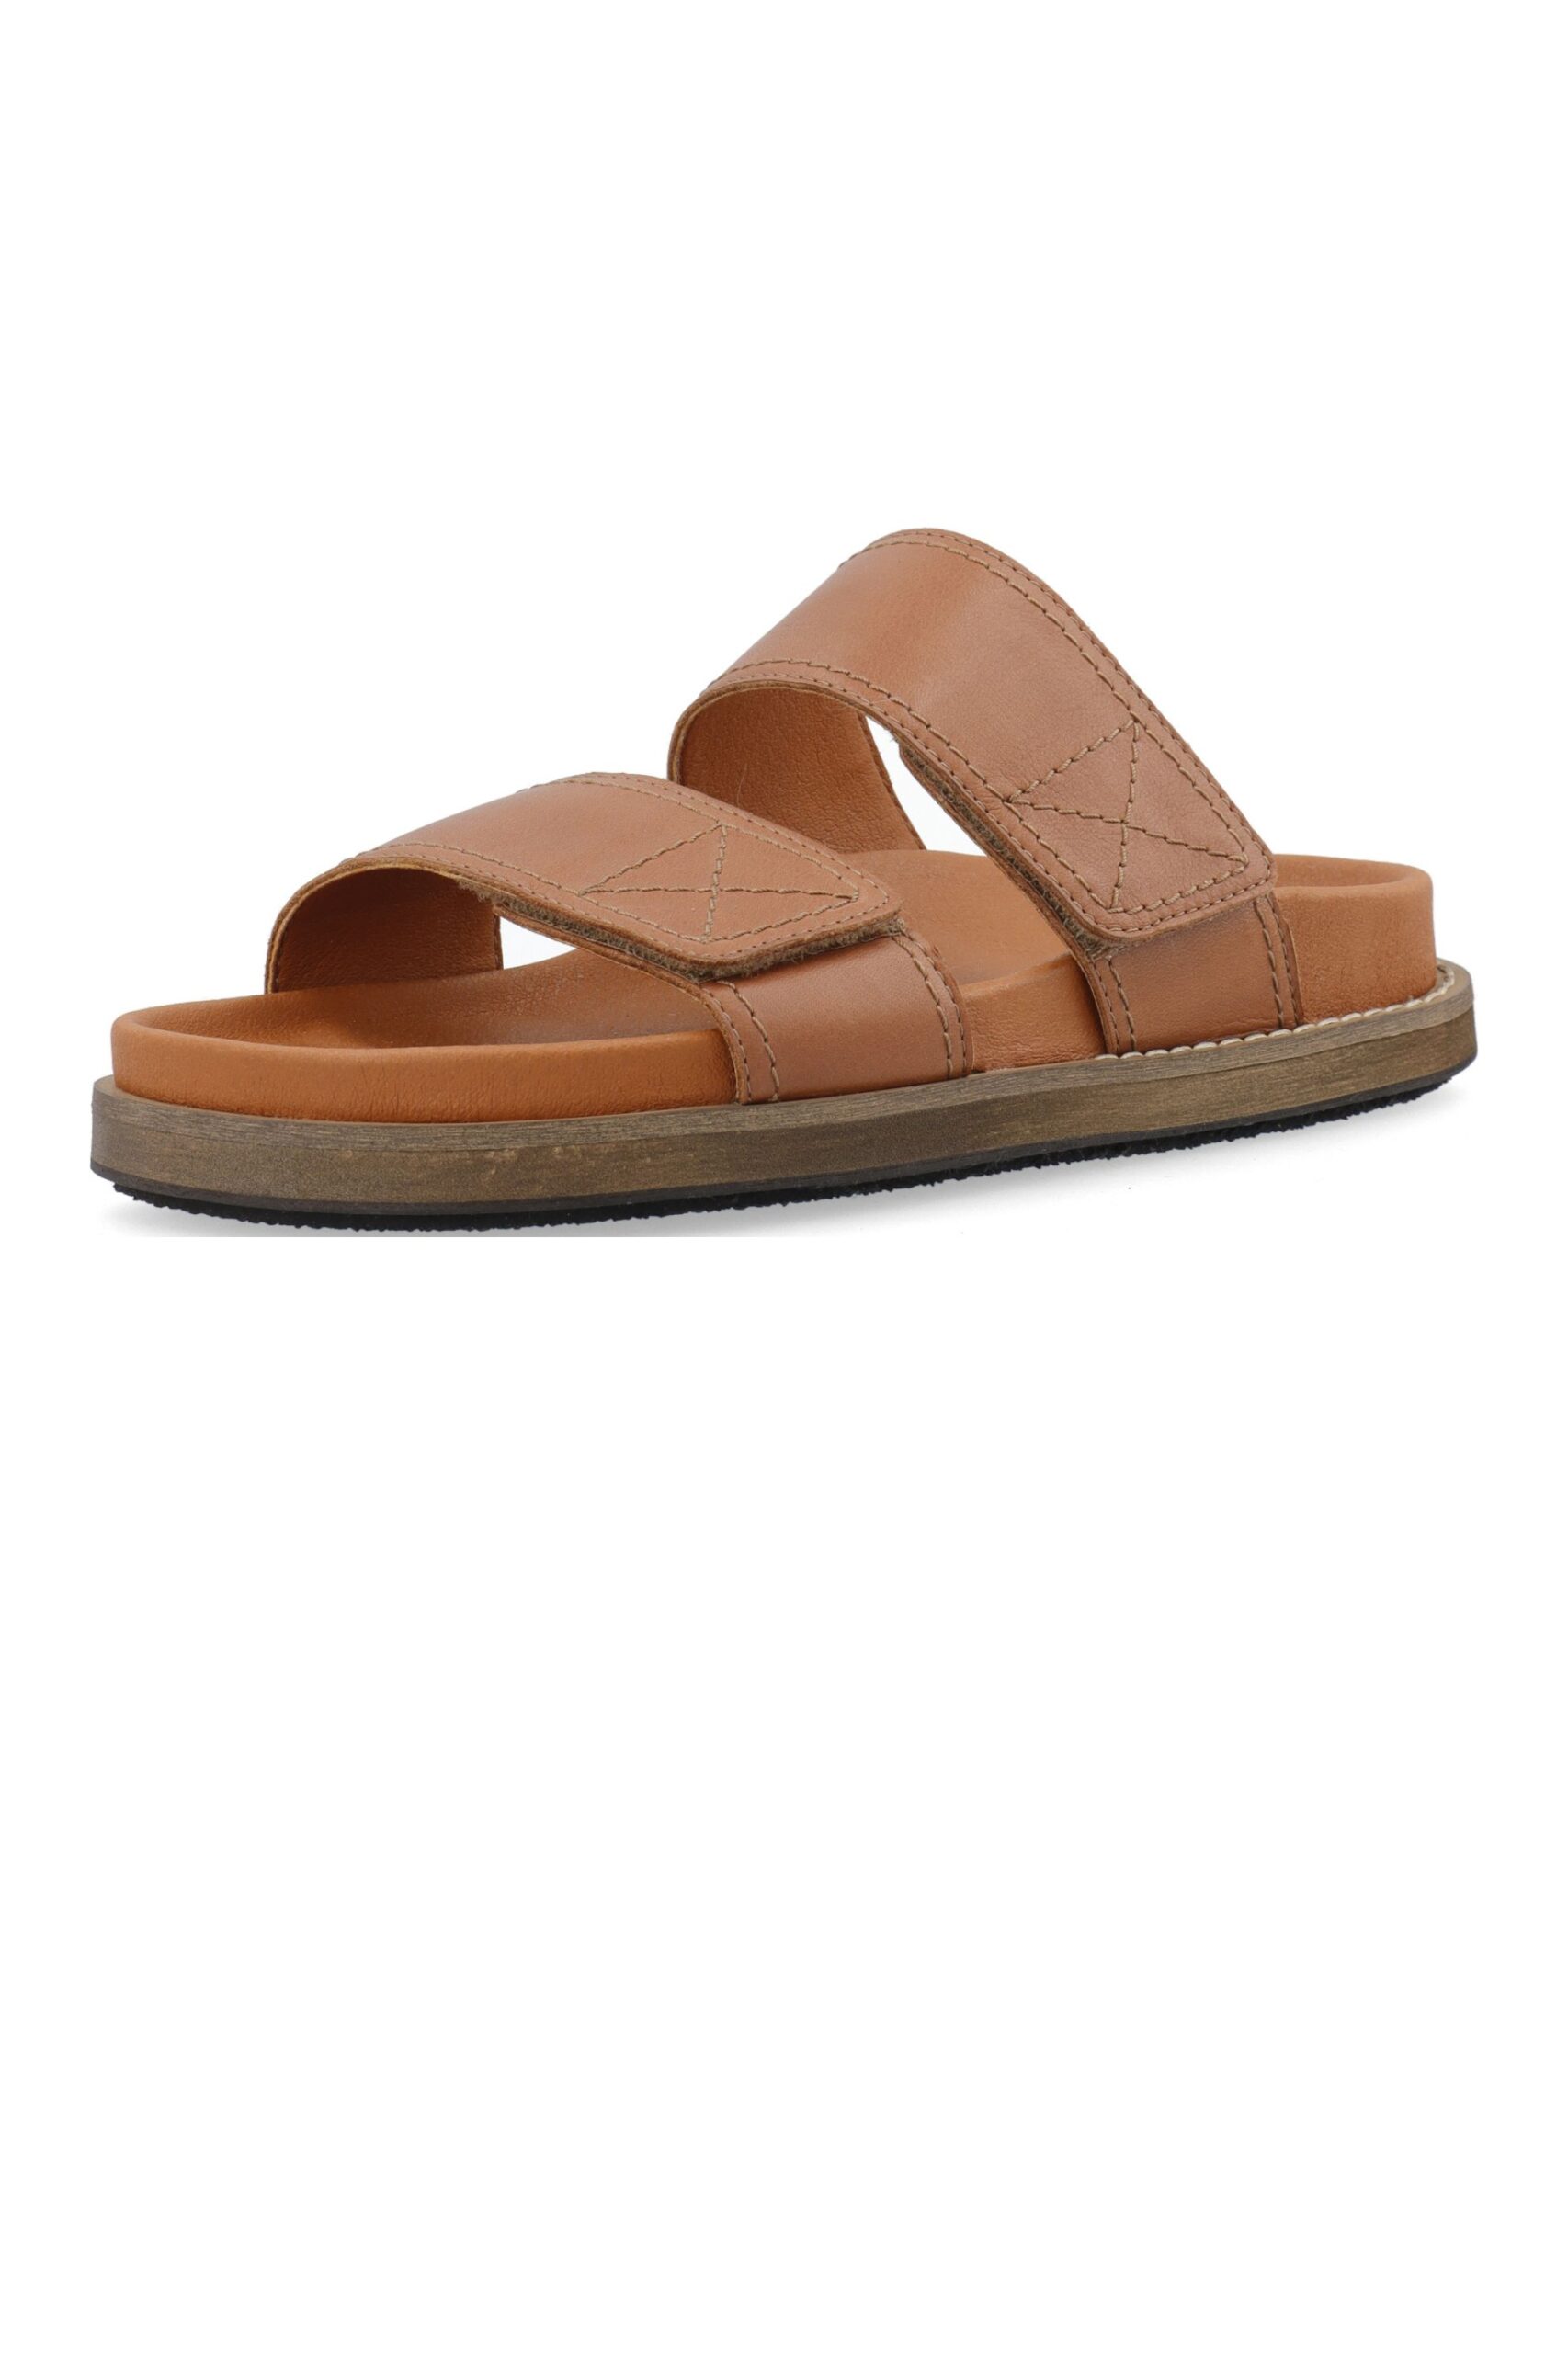 brun sandal - CASKIMMI